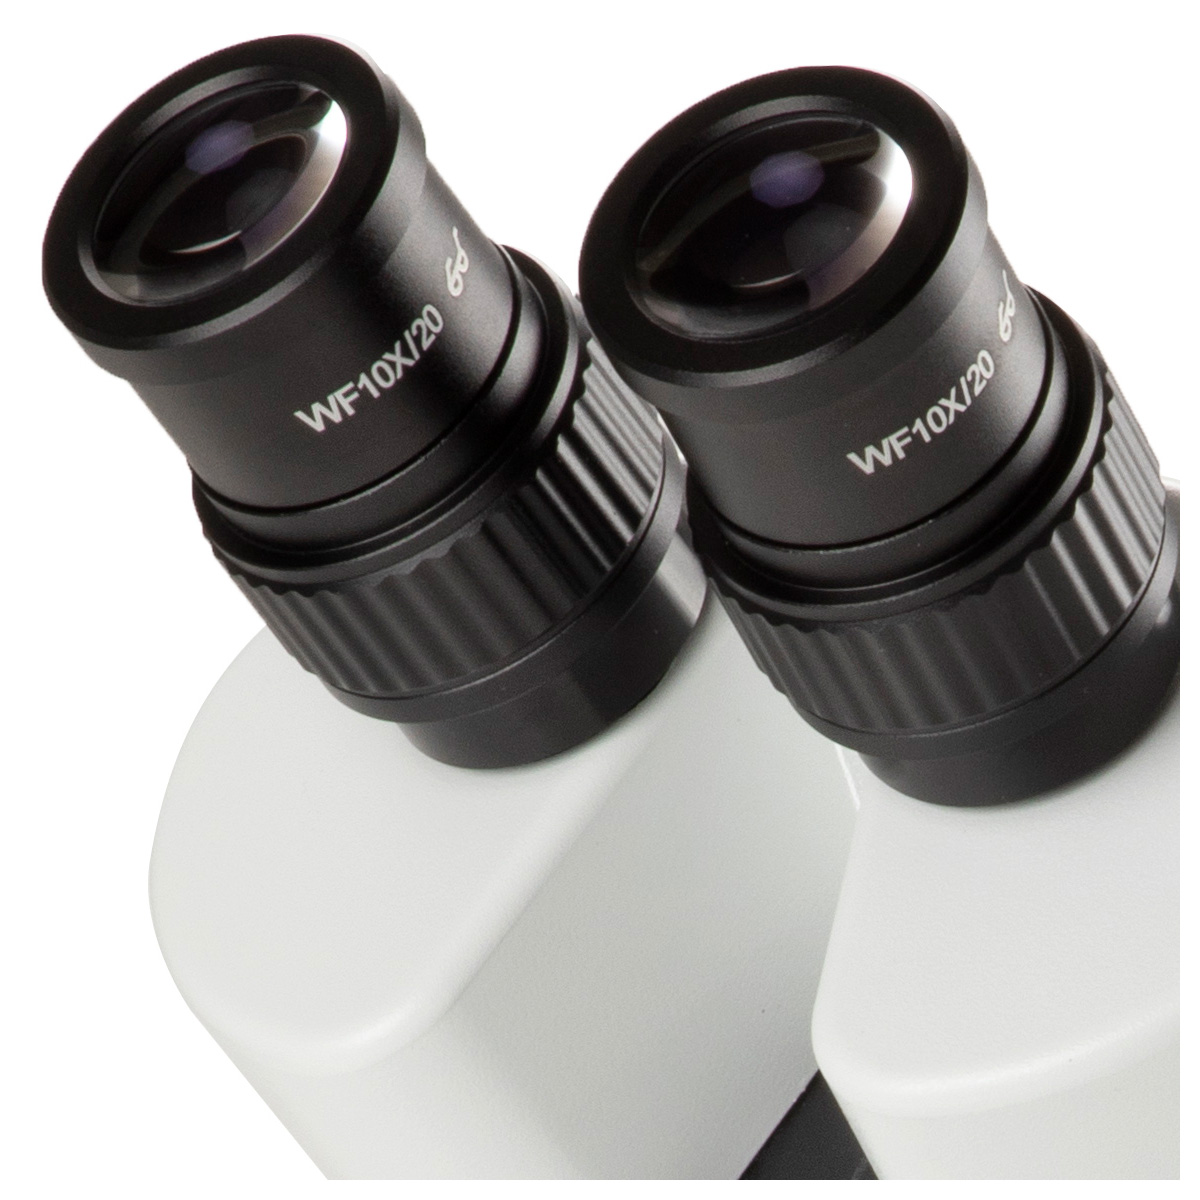 Microscope stéréoscopique trinoculaire StereoBlue, 7x à 45x, zoom 0,7x à 4,5x, éclairage LED